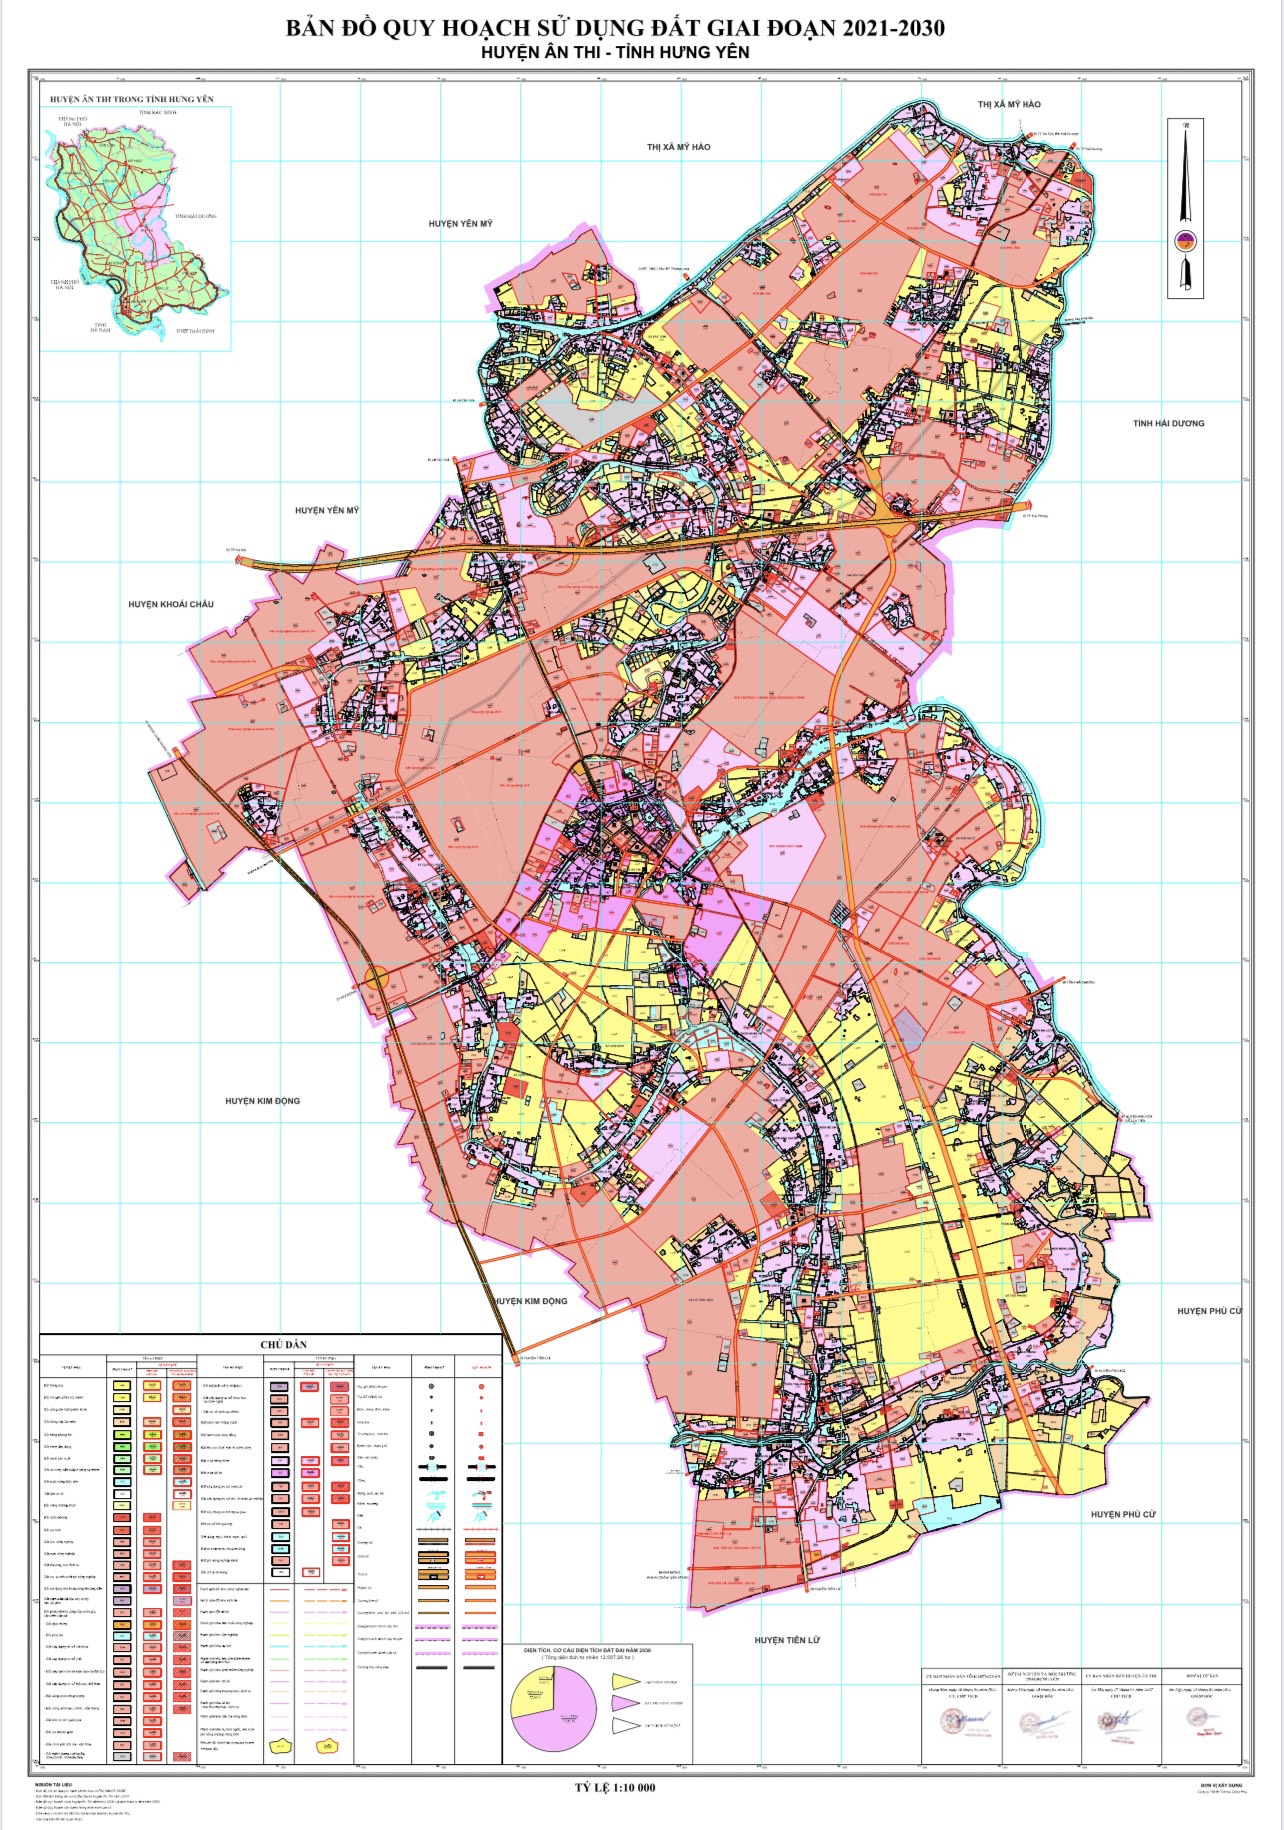 Thông qua bản đồ quy hoạch huyện Ân Thi, ta có thể dễ dàng nhìn thấy tương lai chính là sự phát triển và tiến bộ. Năm 2024 sẽ mang đến cho huyện Ân Thi nhiều cơ hội mới và giúp nó trở thành một khu vực phát triển và tiện nghi cho người dân.